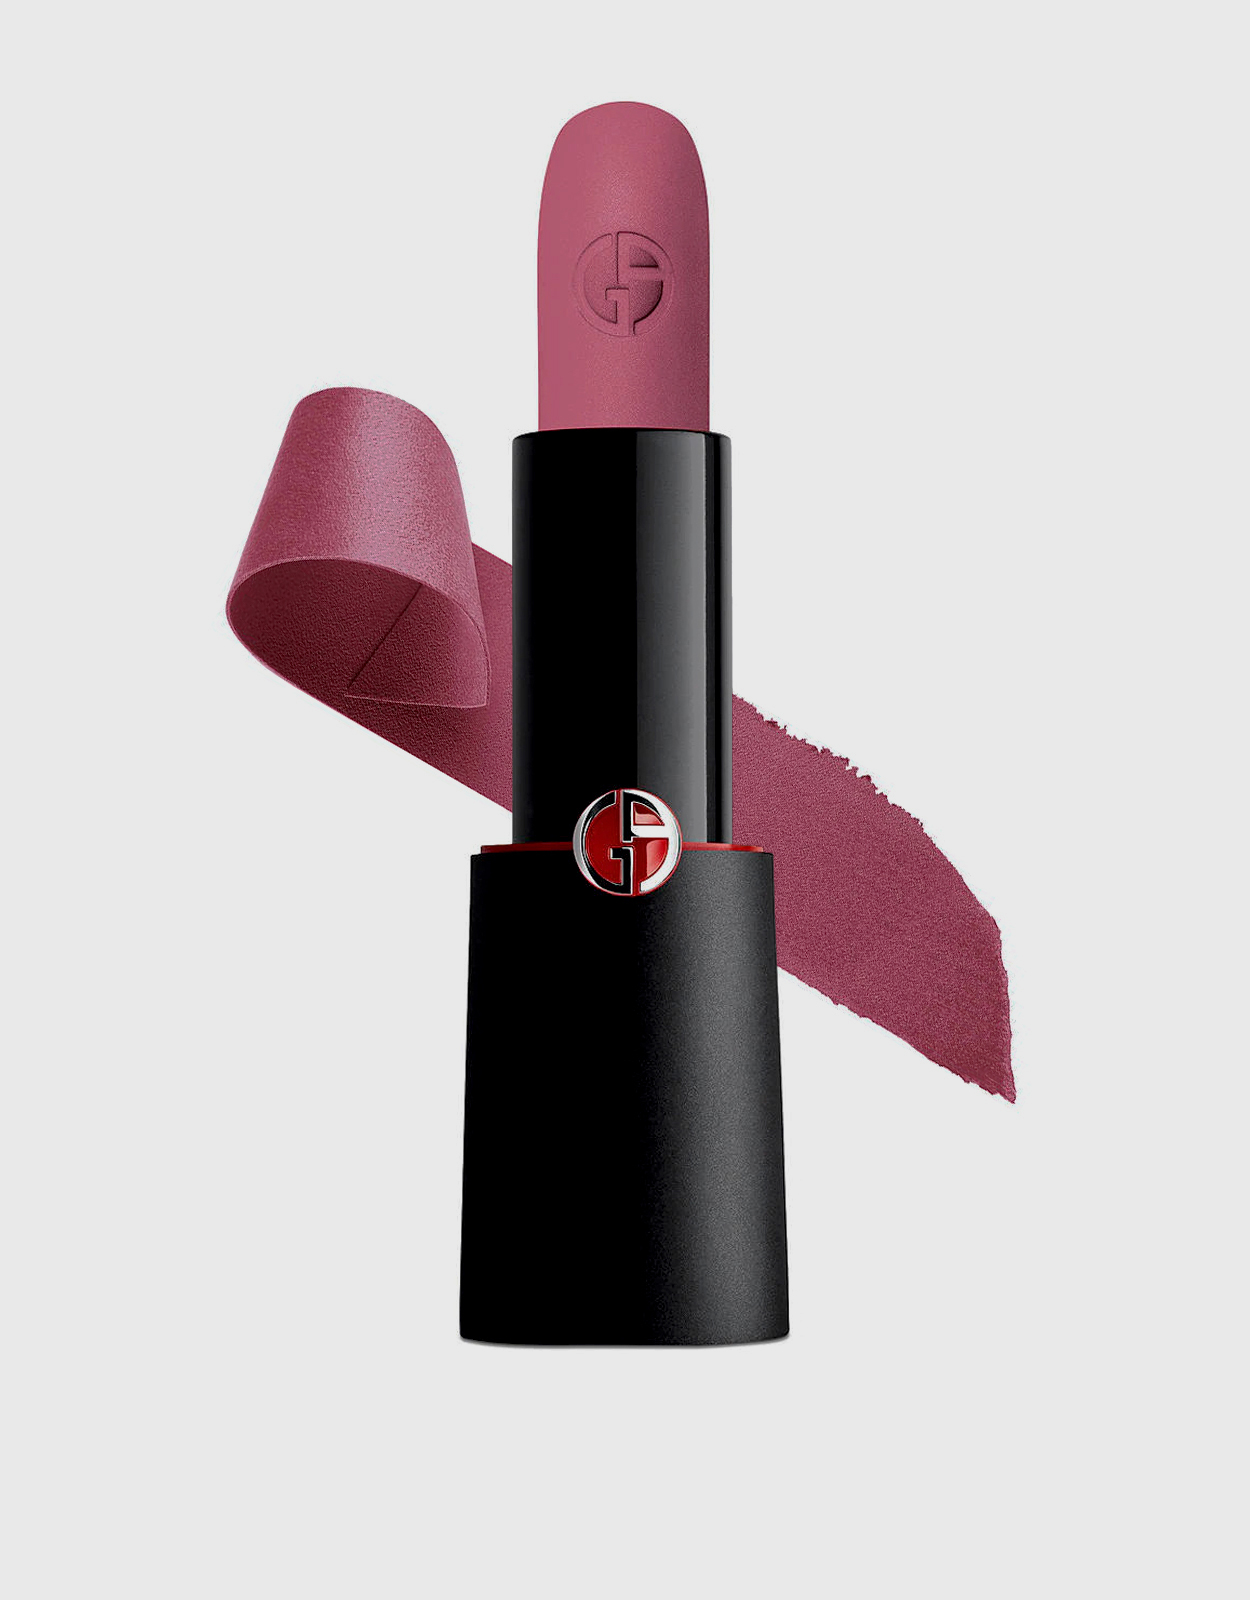 Armani Beauty Rouge D'Armani Matte Lipstick-502 (Makeup,Lip,Lipstick)  